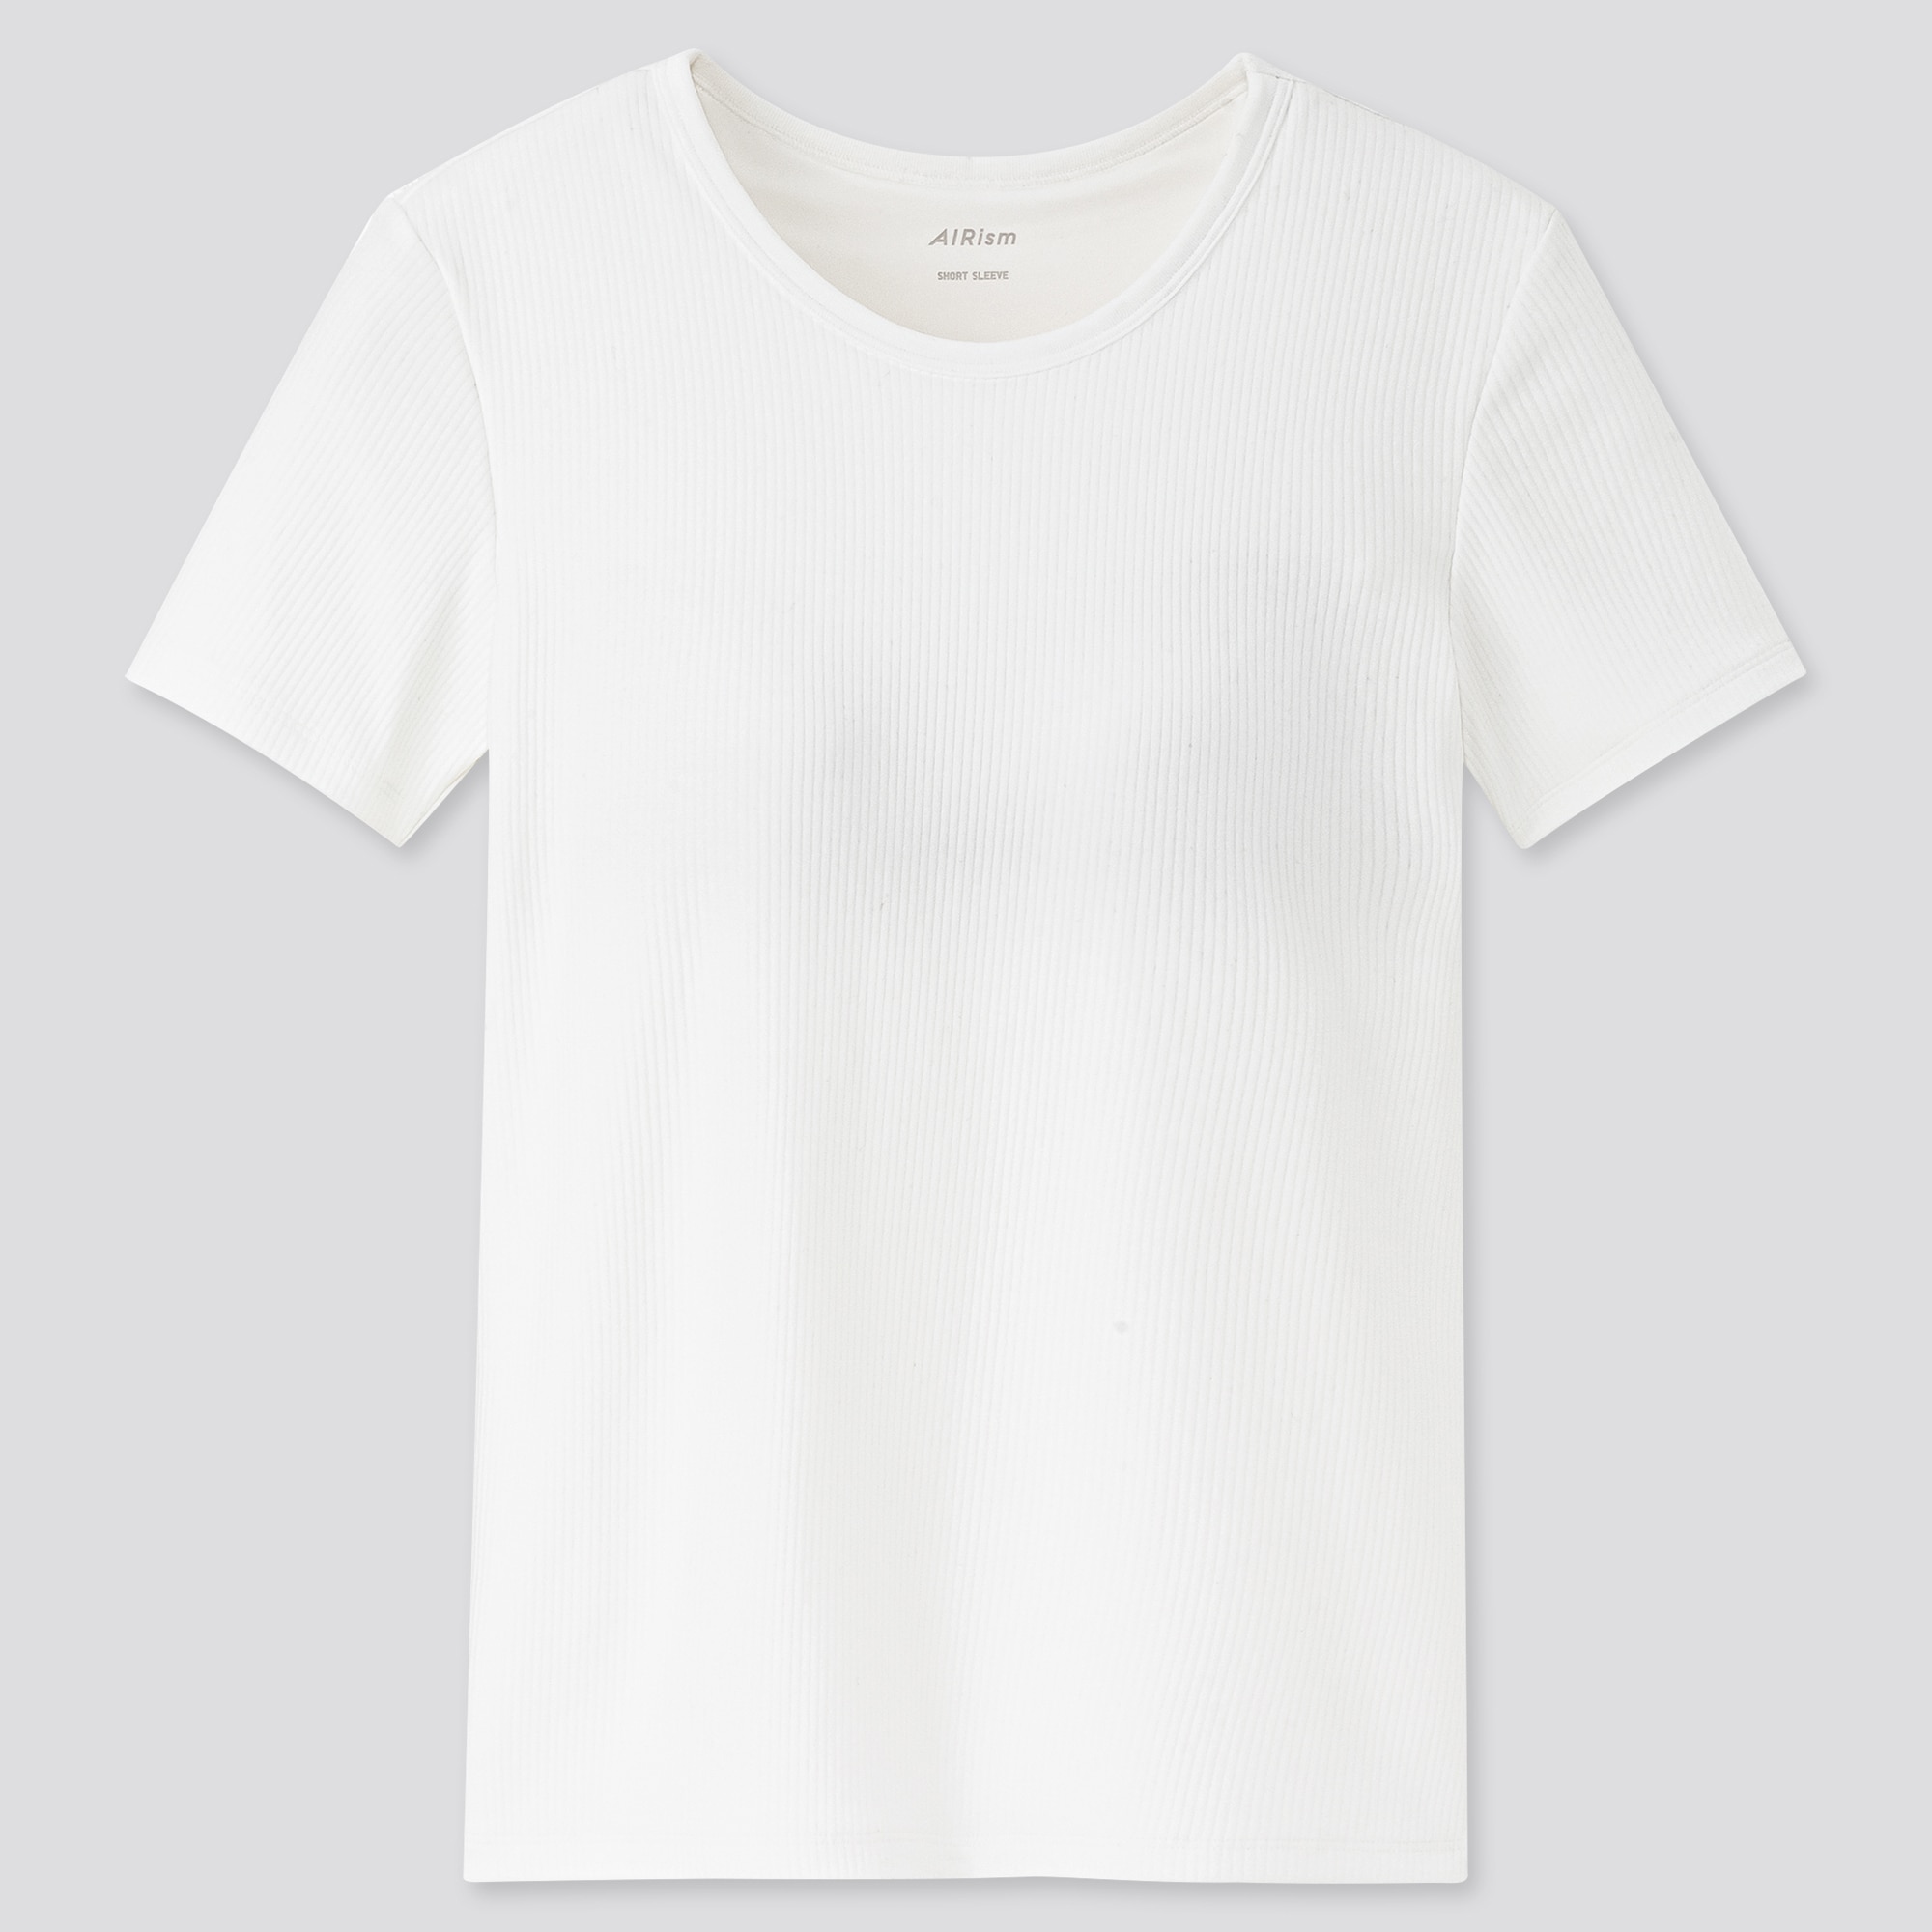 ユニクロのエアリズムコットンリブブラTシャツの写真